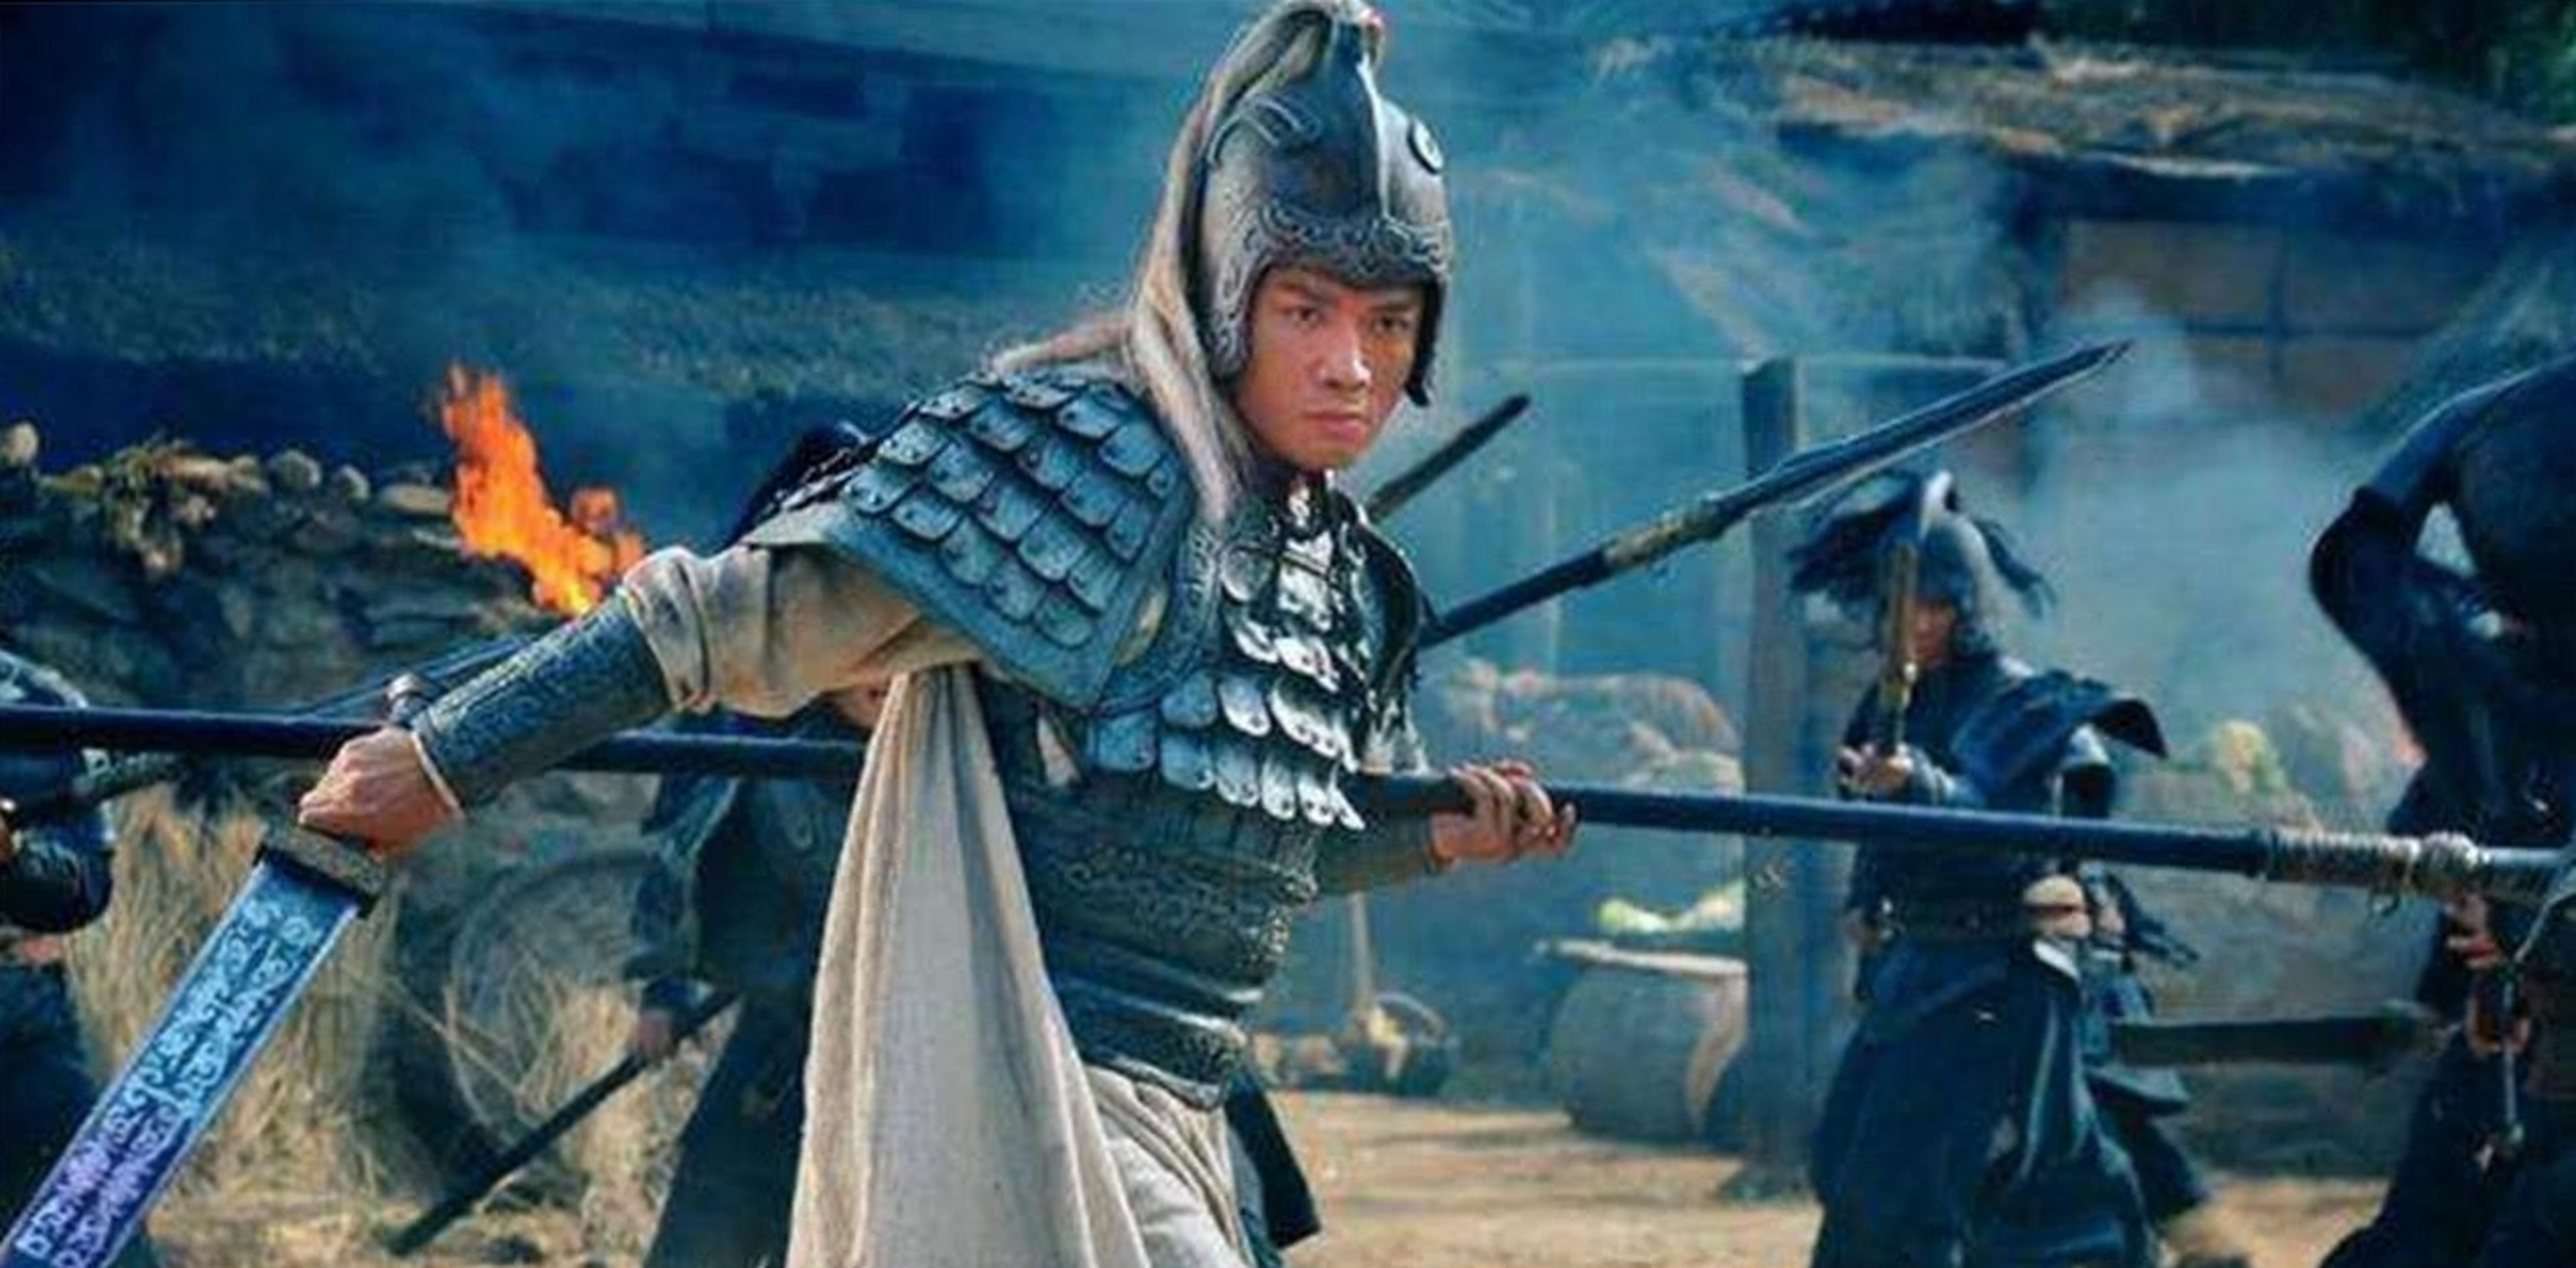 赵云是三国时期蜀汉名将之一,被誉为常胜将军